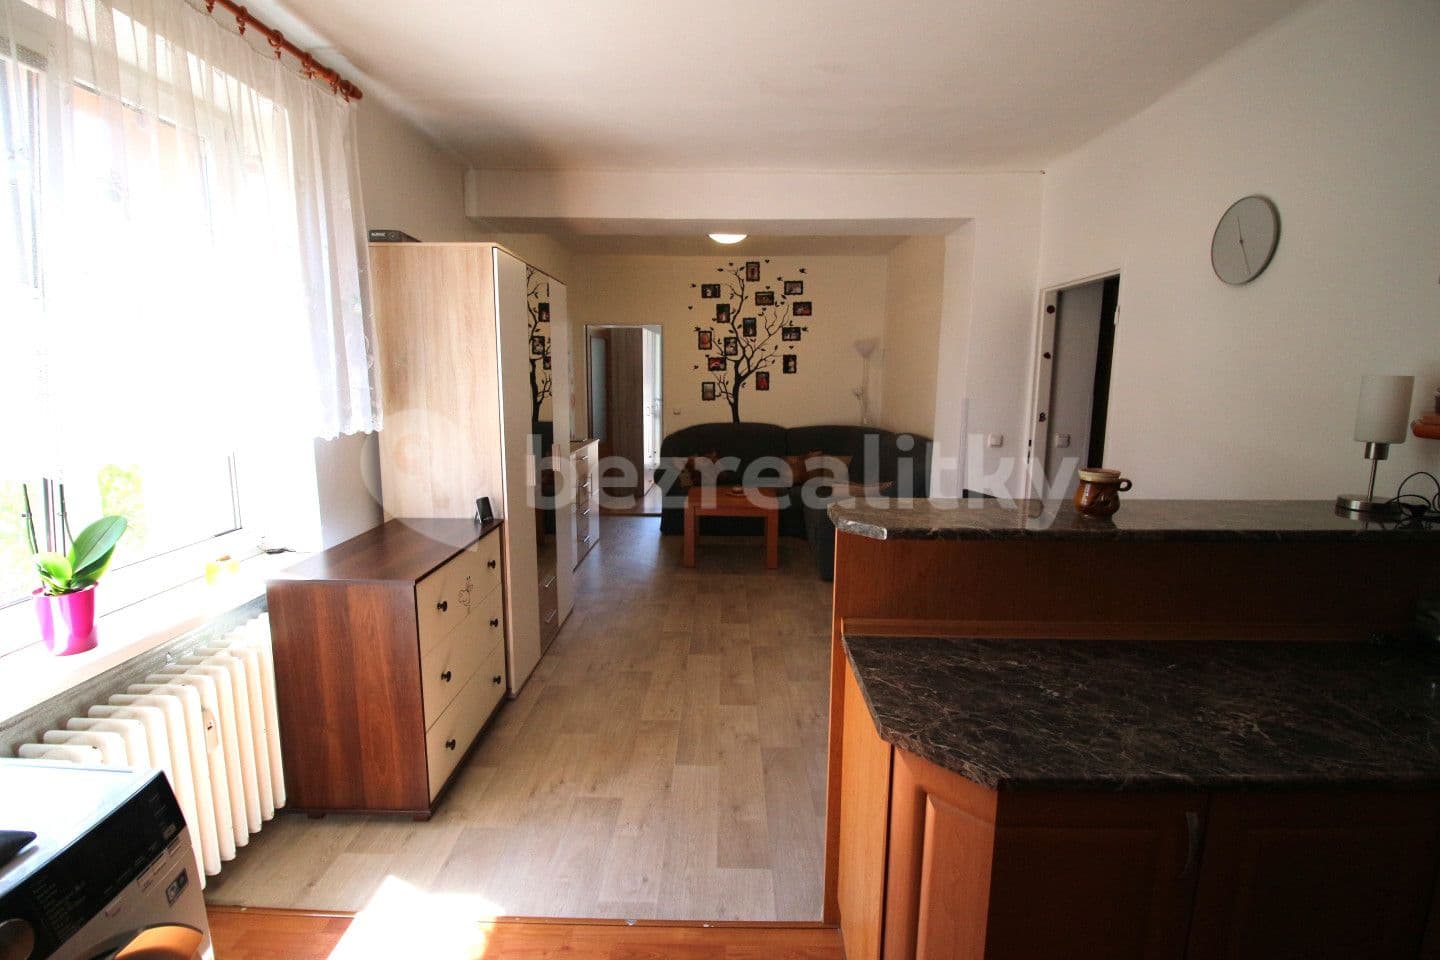 2 bedroom with open-plan kitchen flat for sale, 54 m², Drobného, Nové Město na Moravě, Vysočina Region